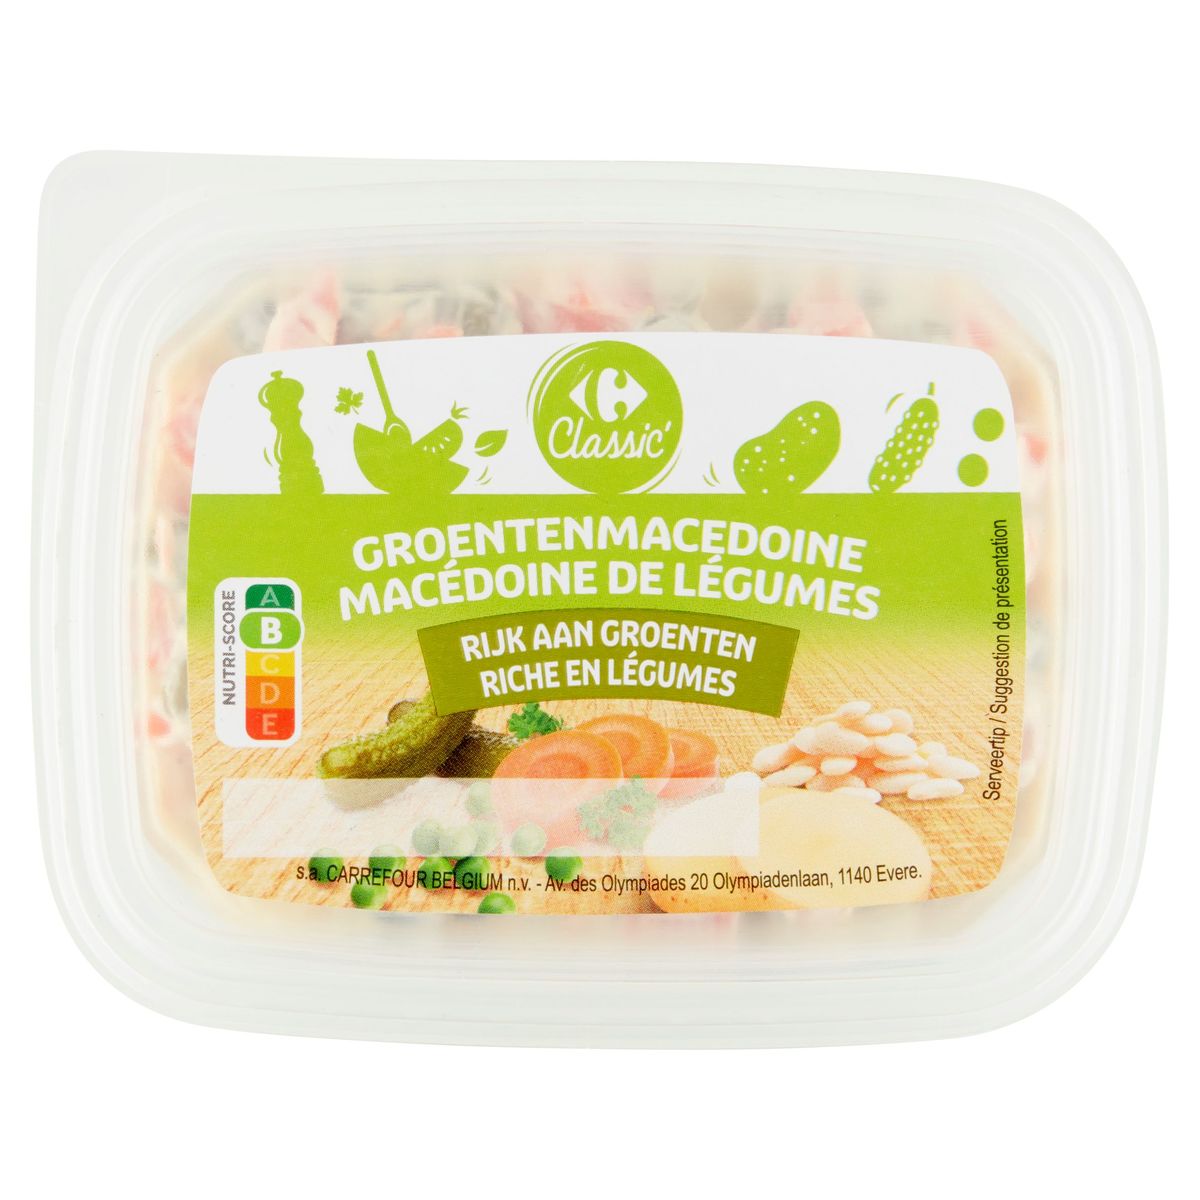 Carrefour Classic' Macédonie de Légumes 350 g